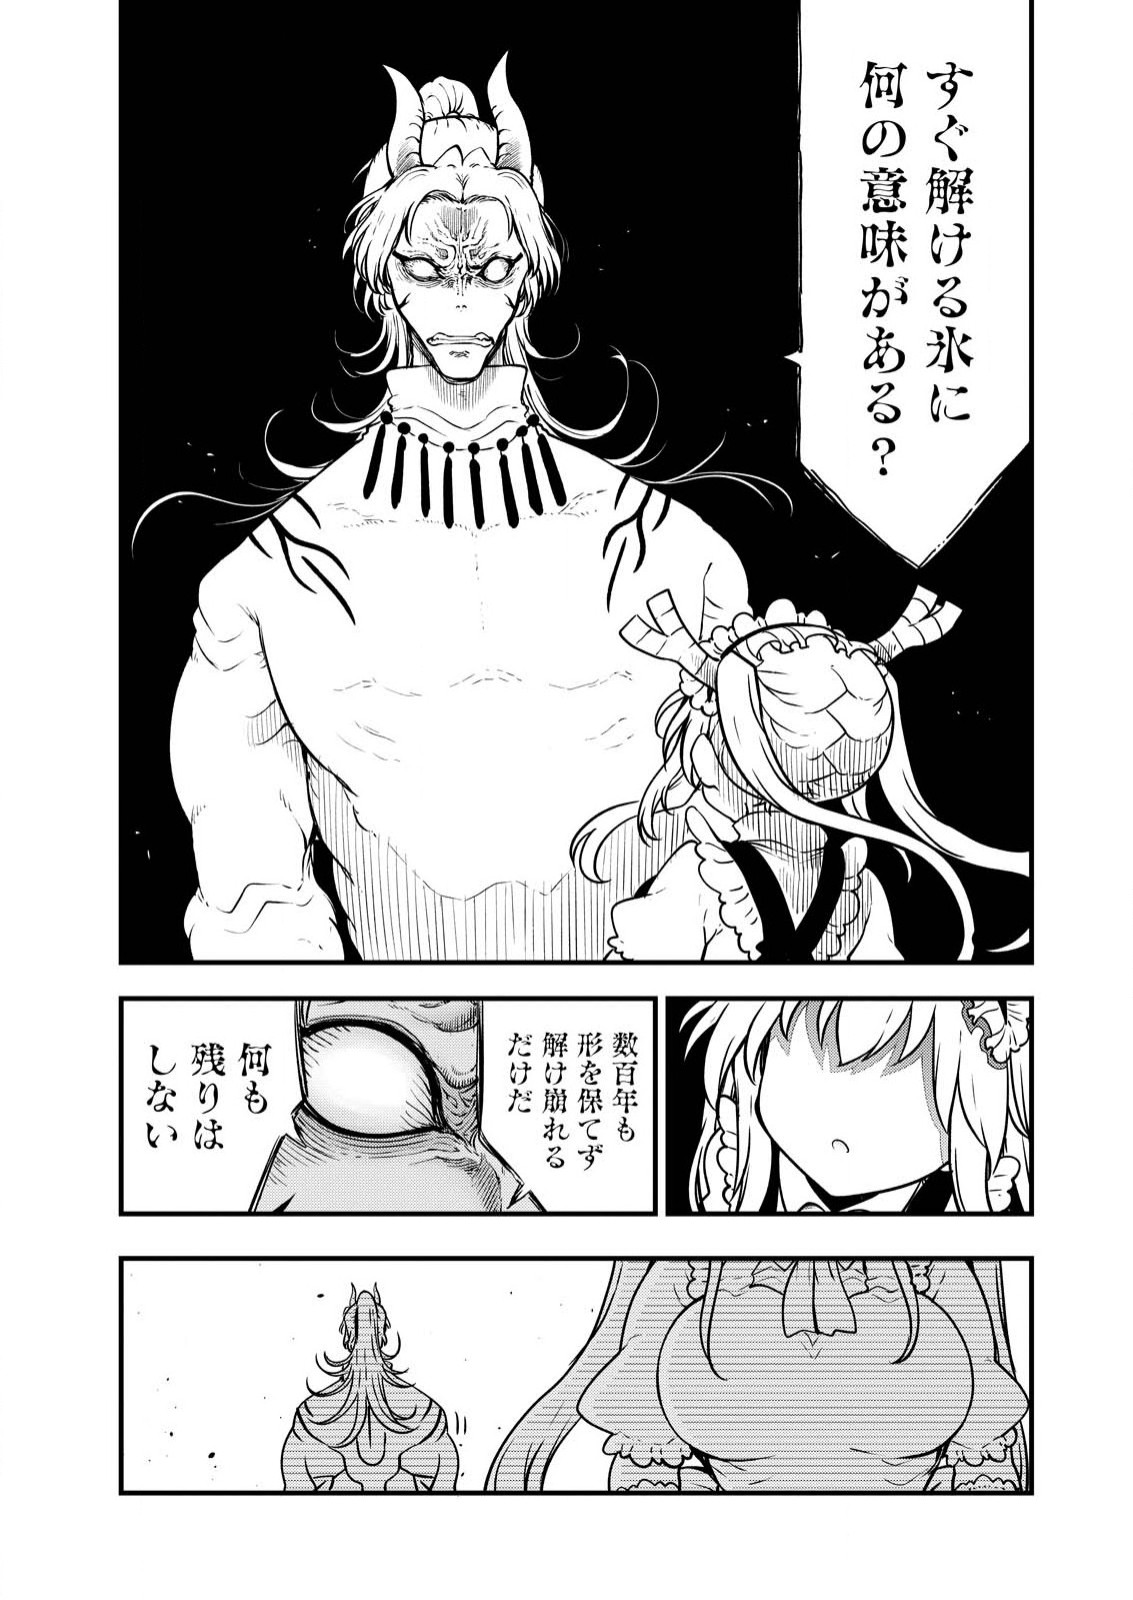 Kobayashi-san Chi no Maid Dragon - Chapter 142 - Page 12